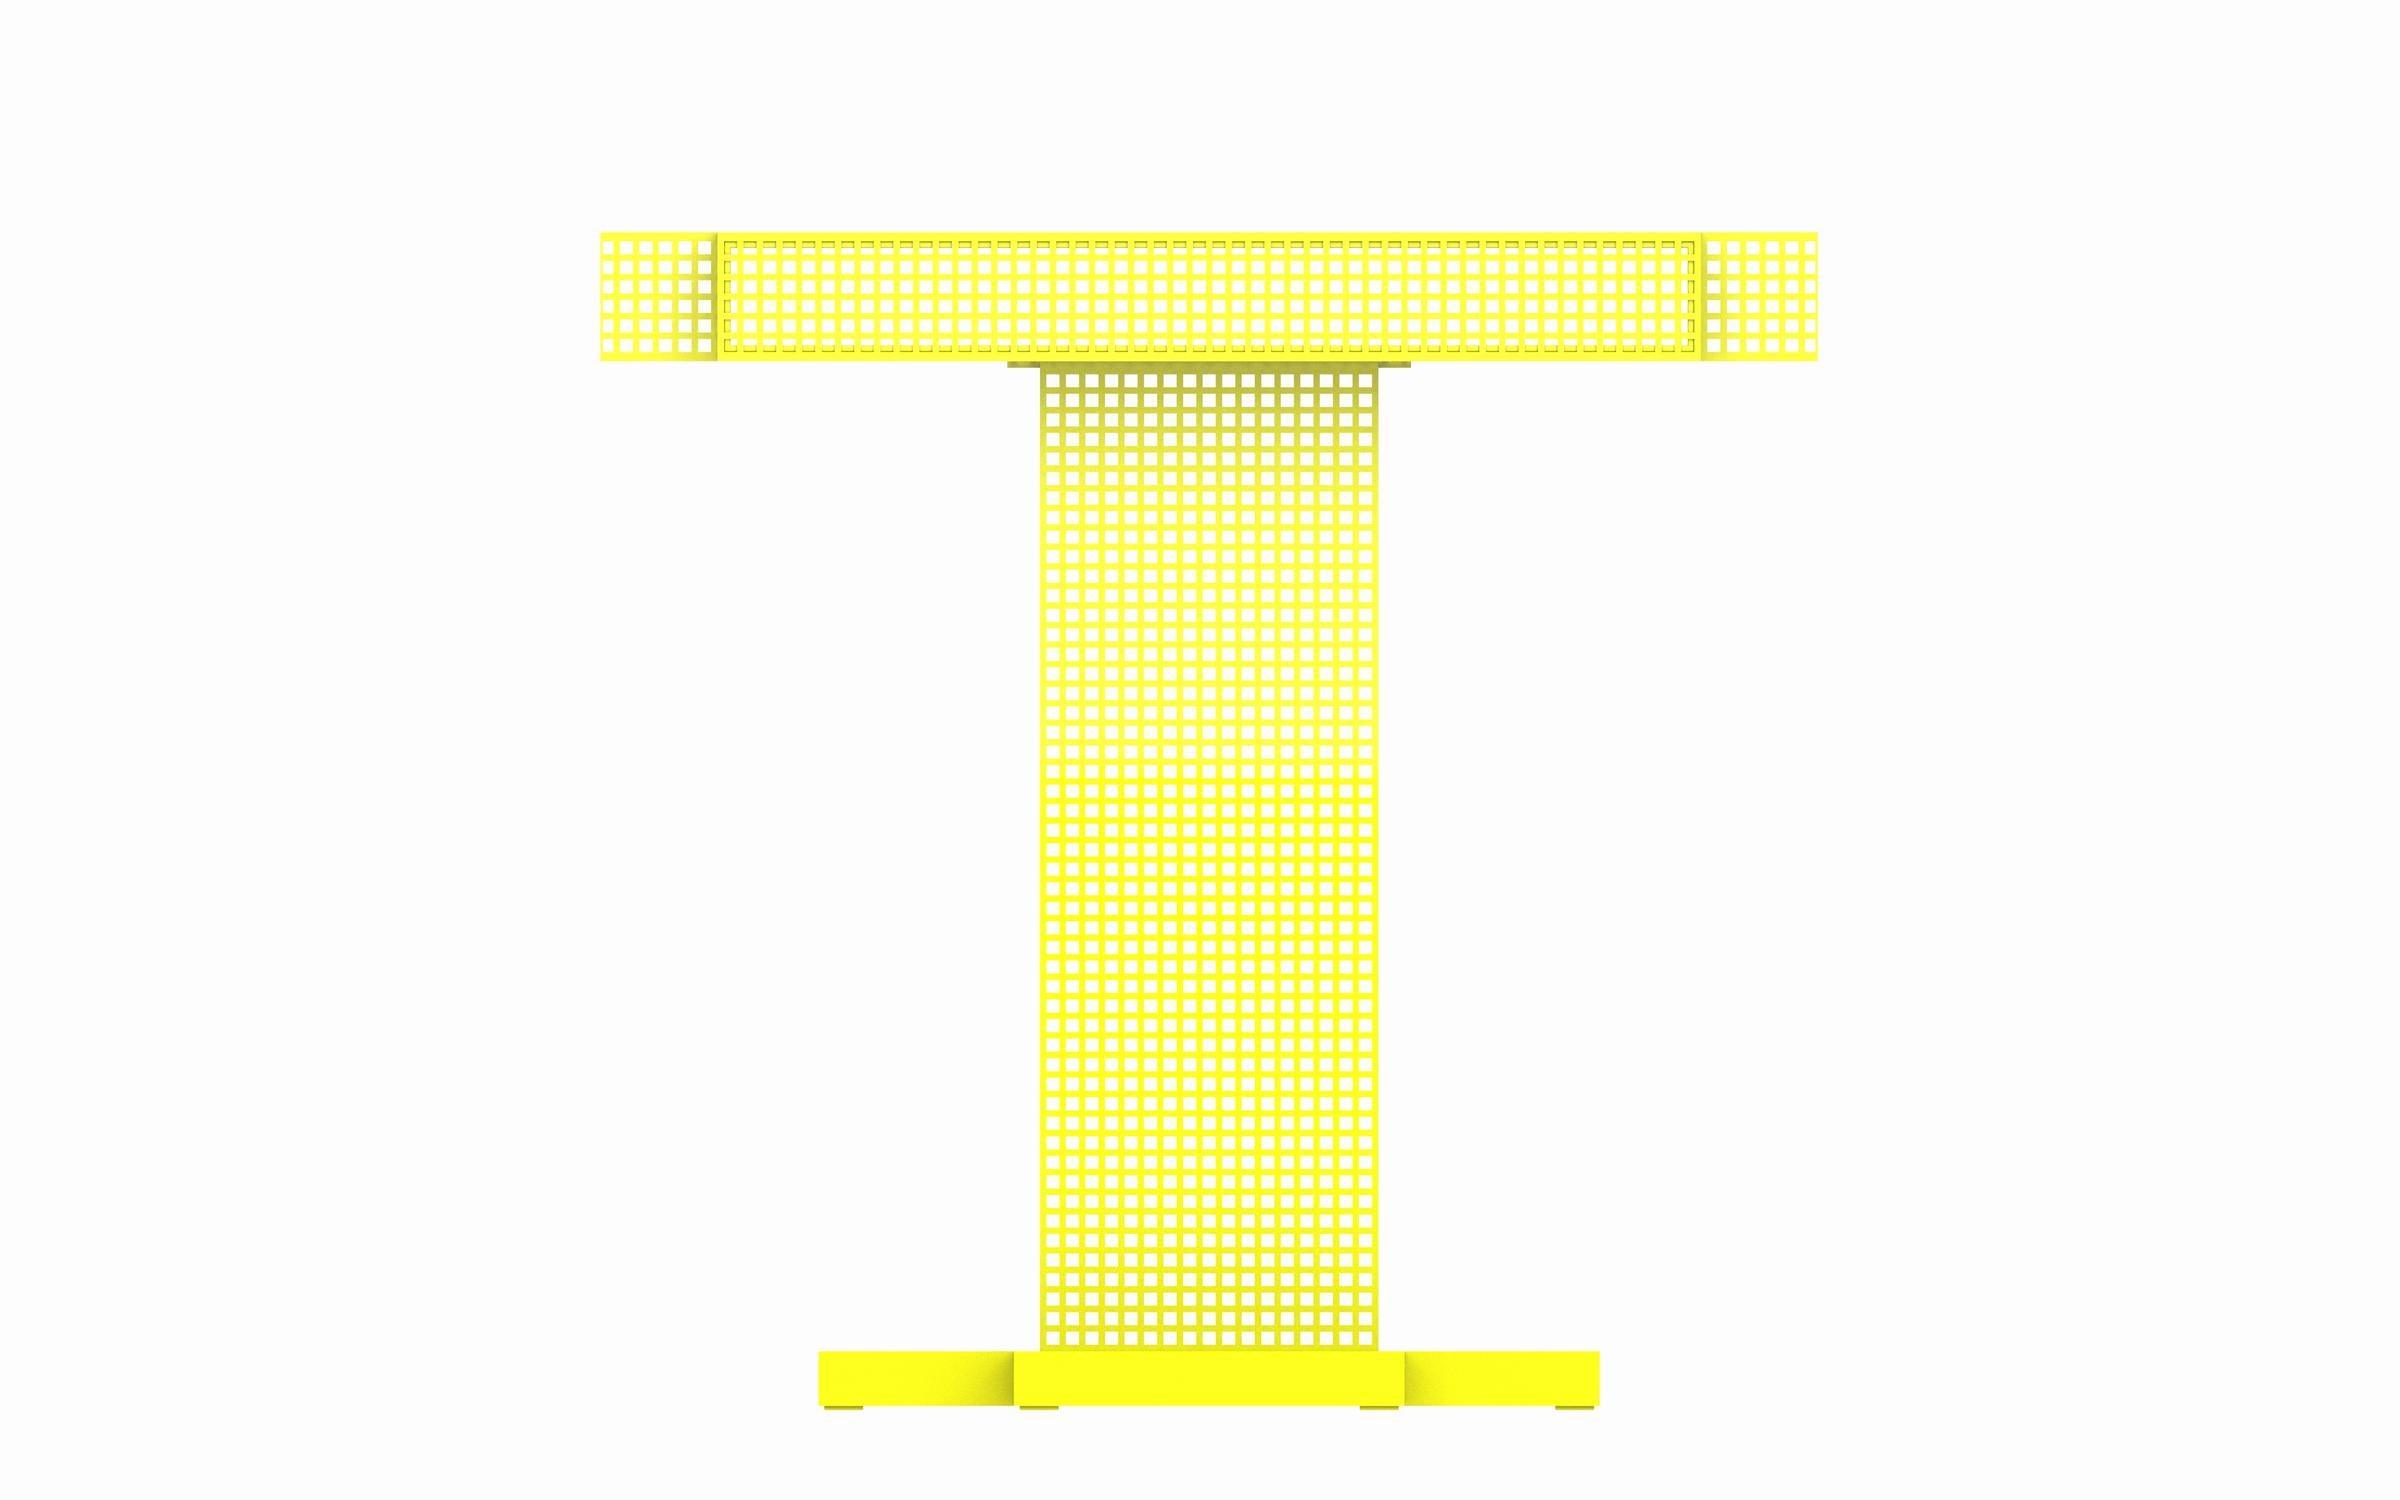 Konsola METROPOLIS stalowy Mati Sipiora Neonowy żółty   Eye on Design